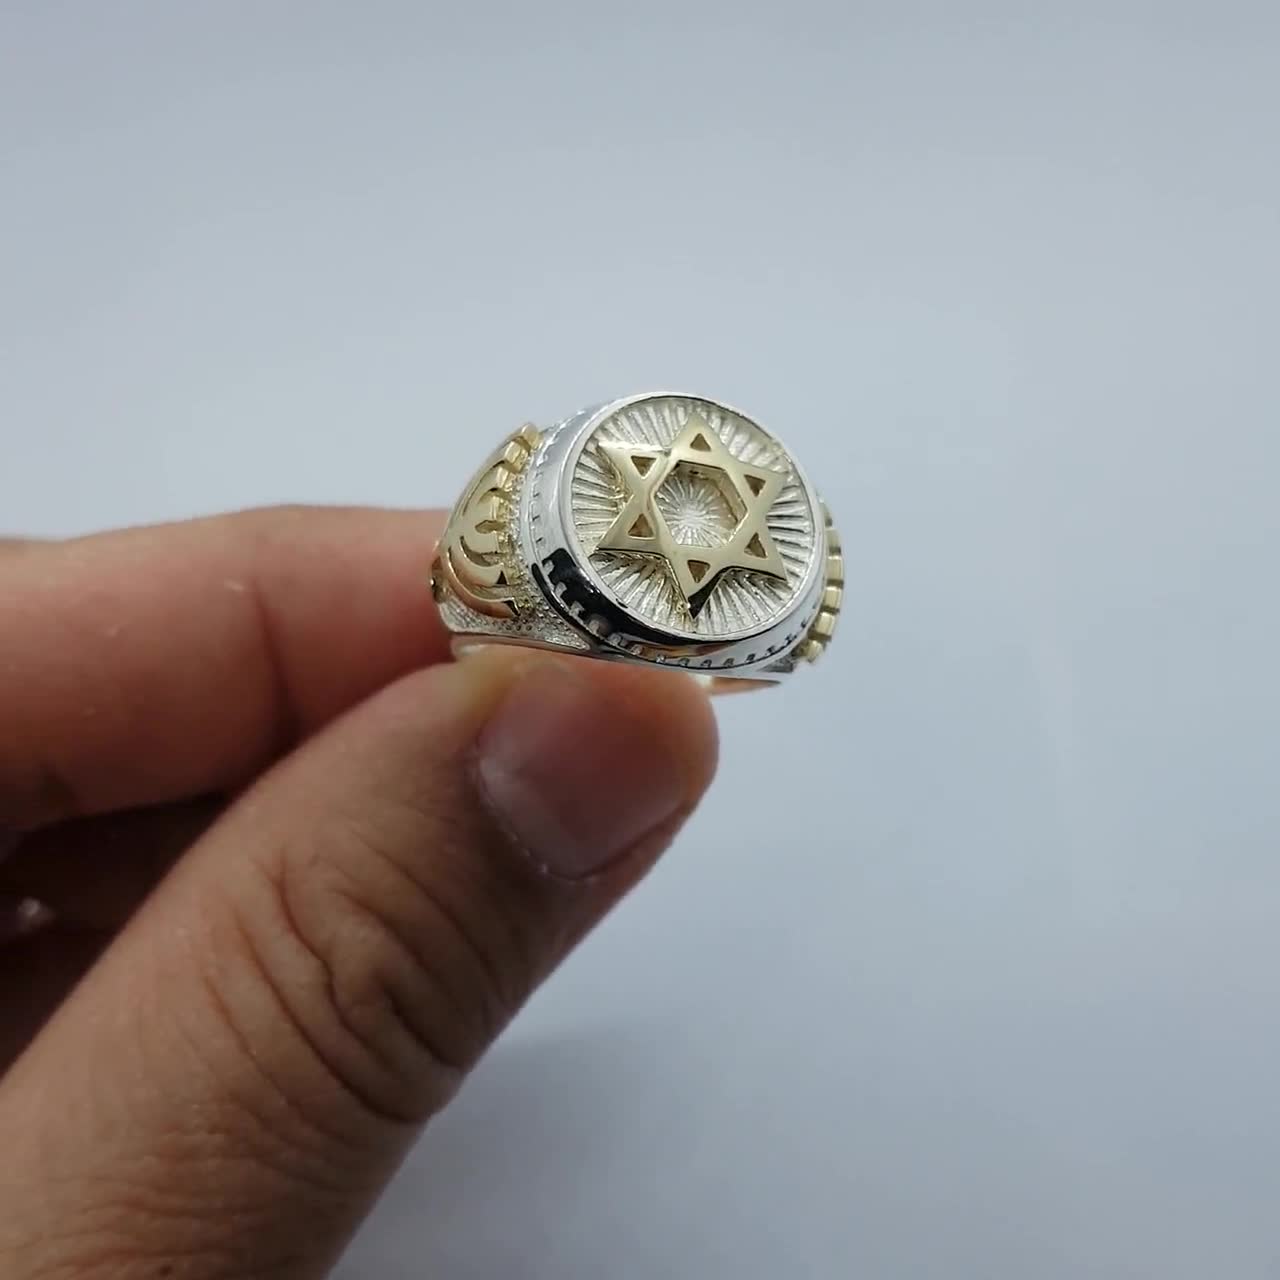  YANGFJcor Anillo giratorio de estrella de David, anillo vintage  antiestrés para hombre, símbolo religioso de Israel, regalo de joyería de  estrella judía. : Todo lo demás